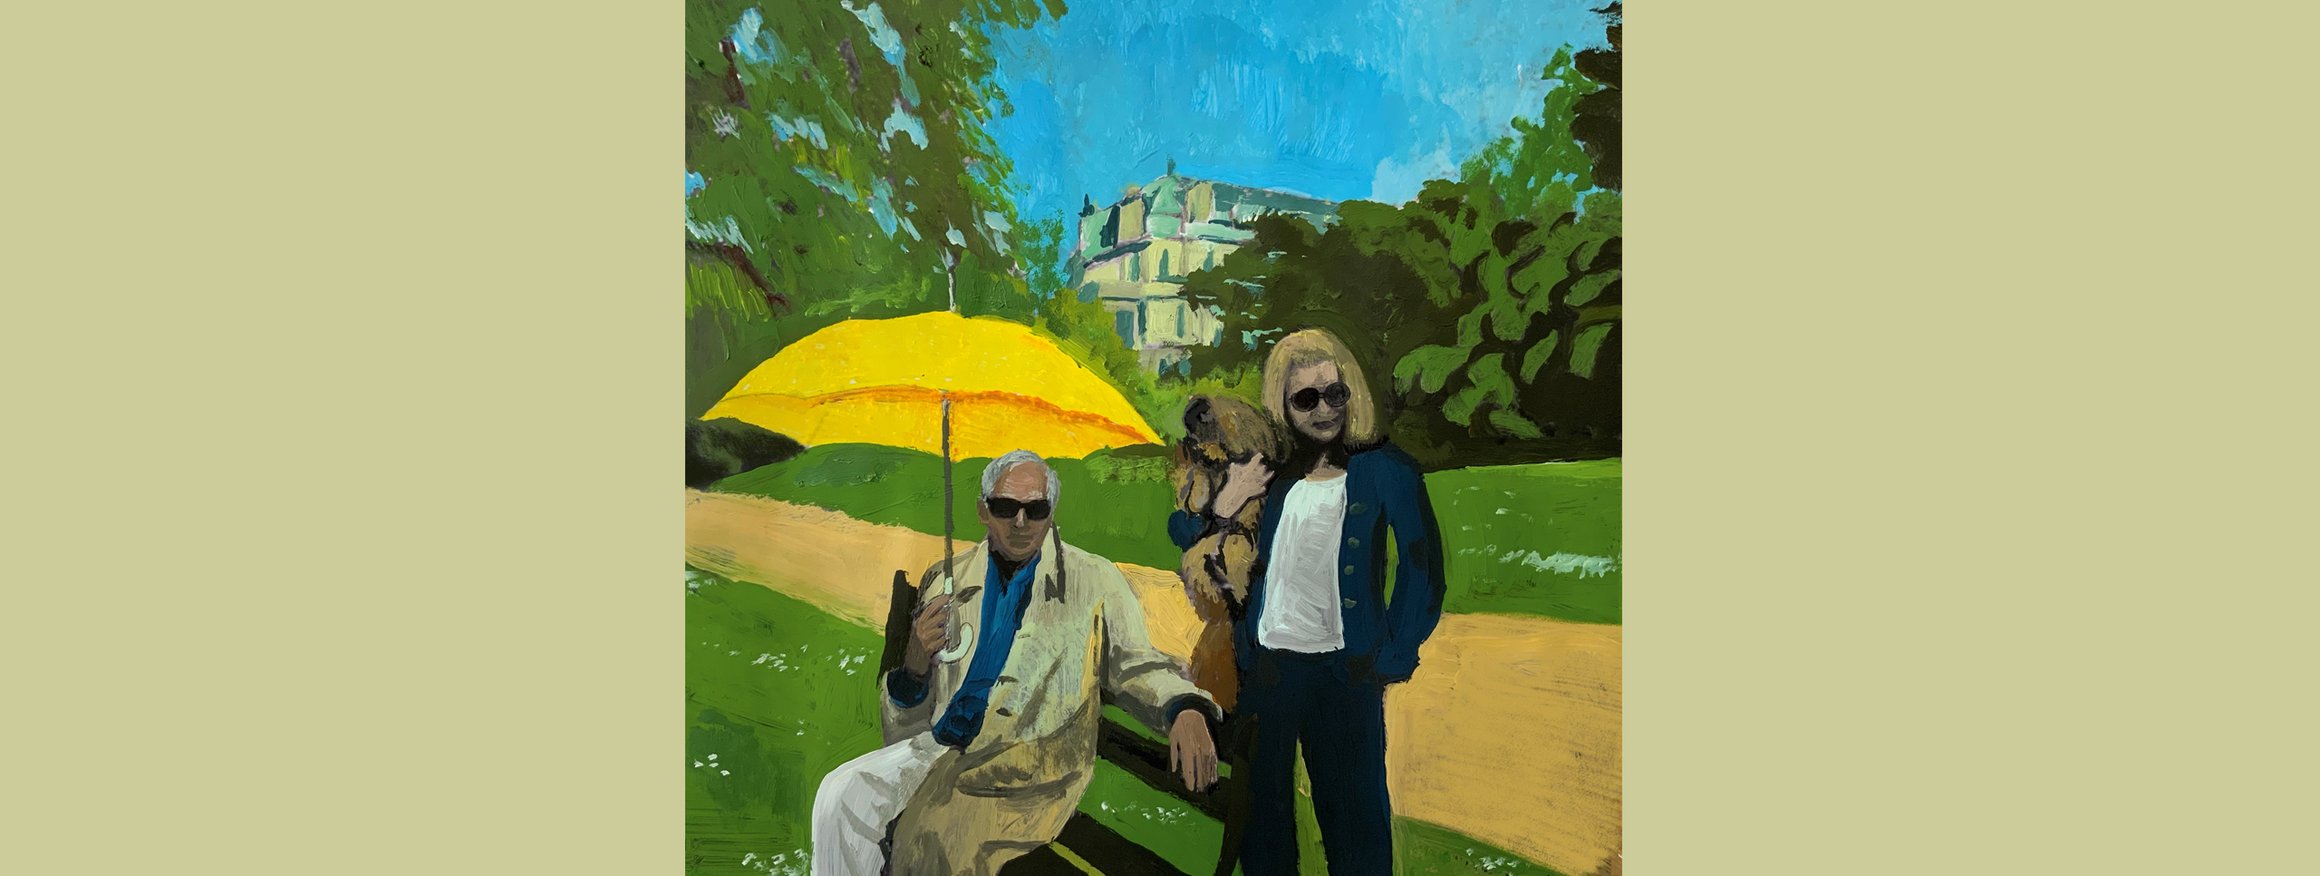 Die Illustration zeigt ein Paar im Park mit einem gelben Schirm